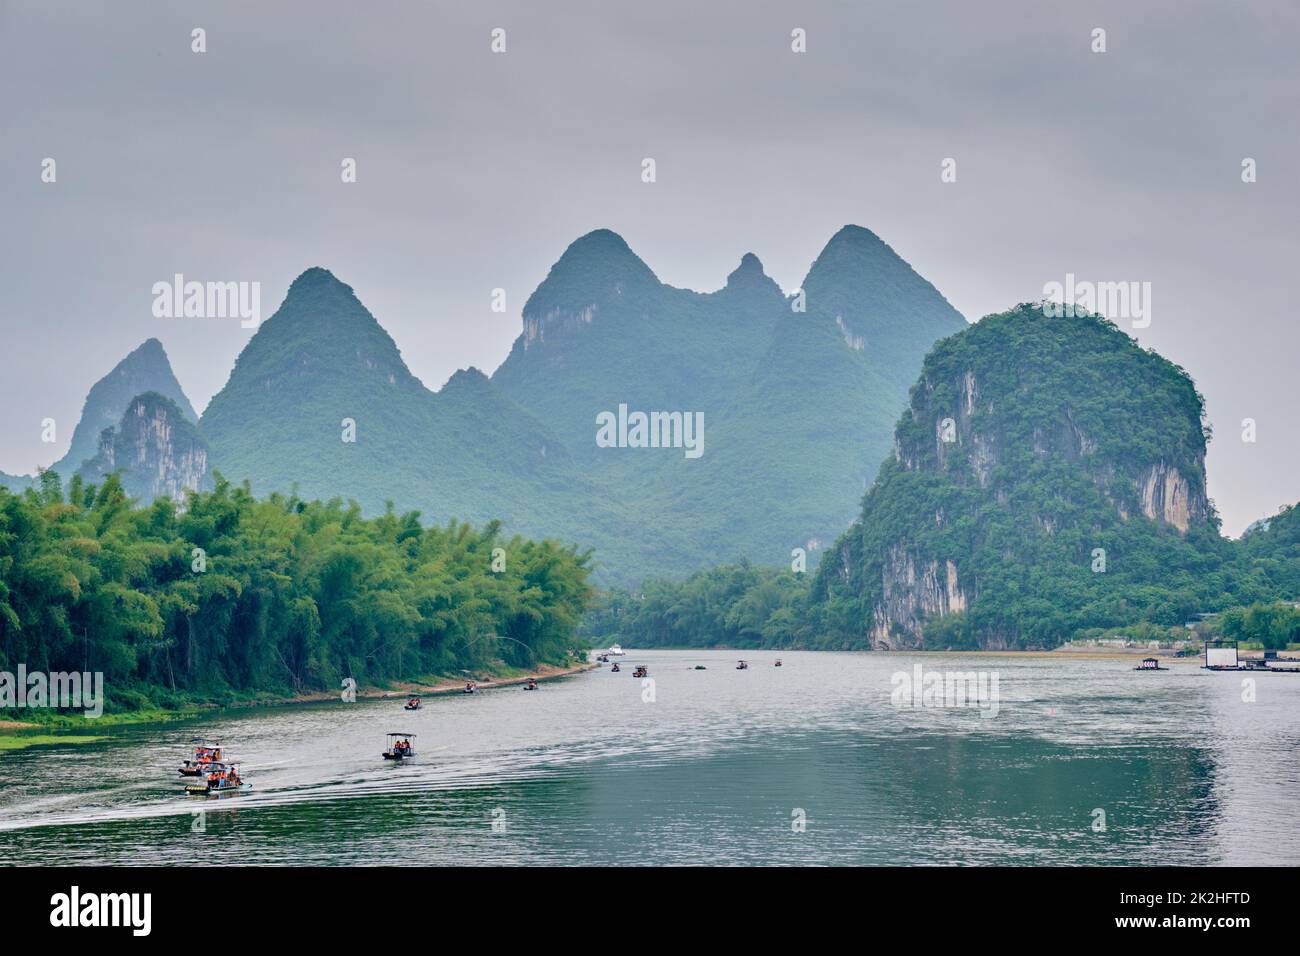 Los barcos turísticos en río Li, con las montañas al fondo carst Foto de stock